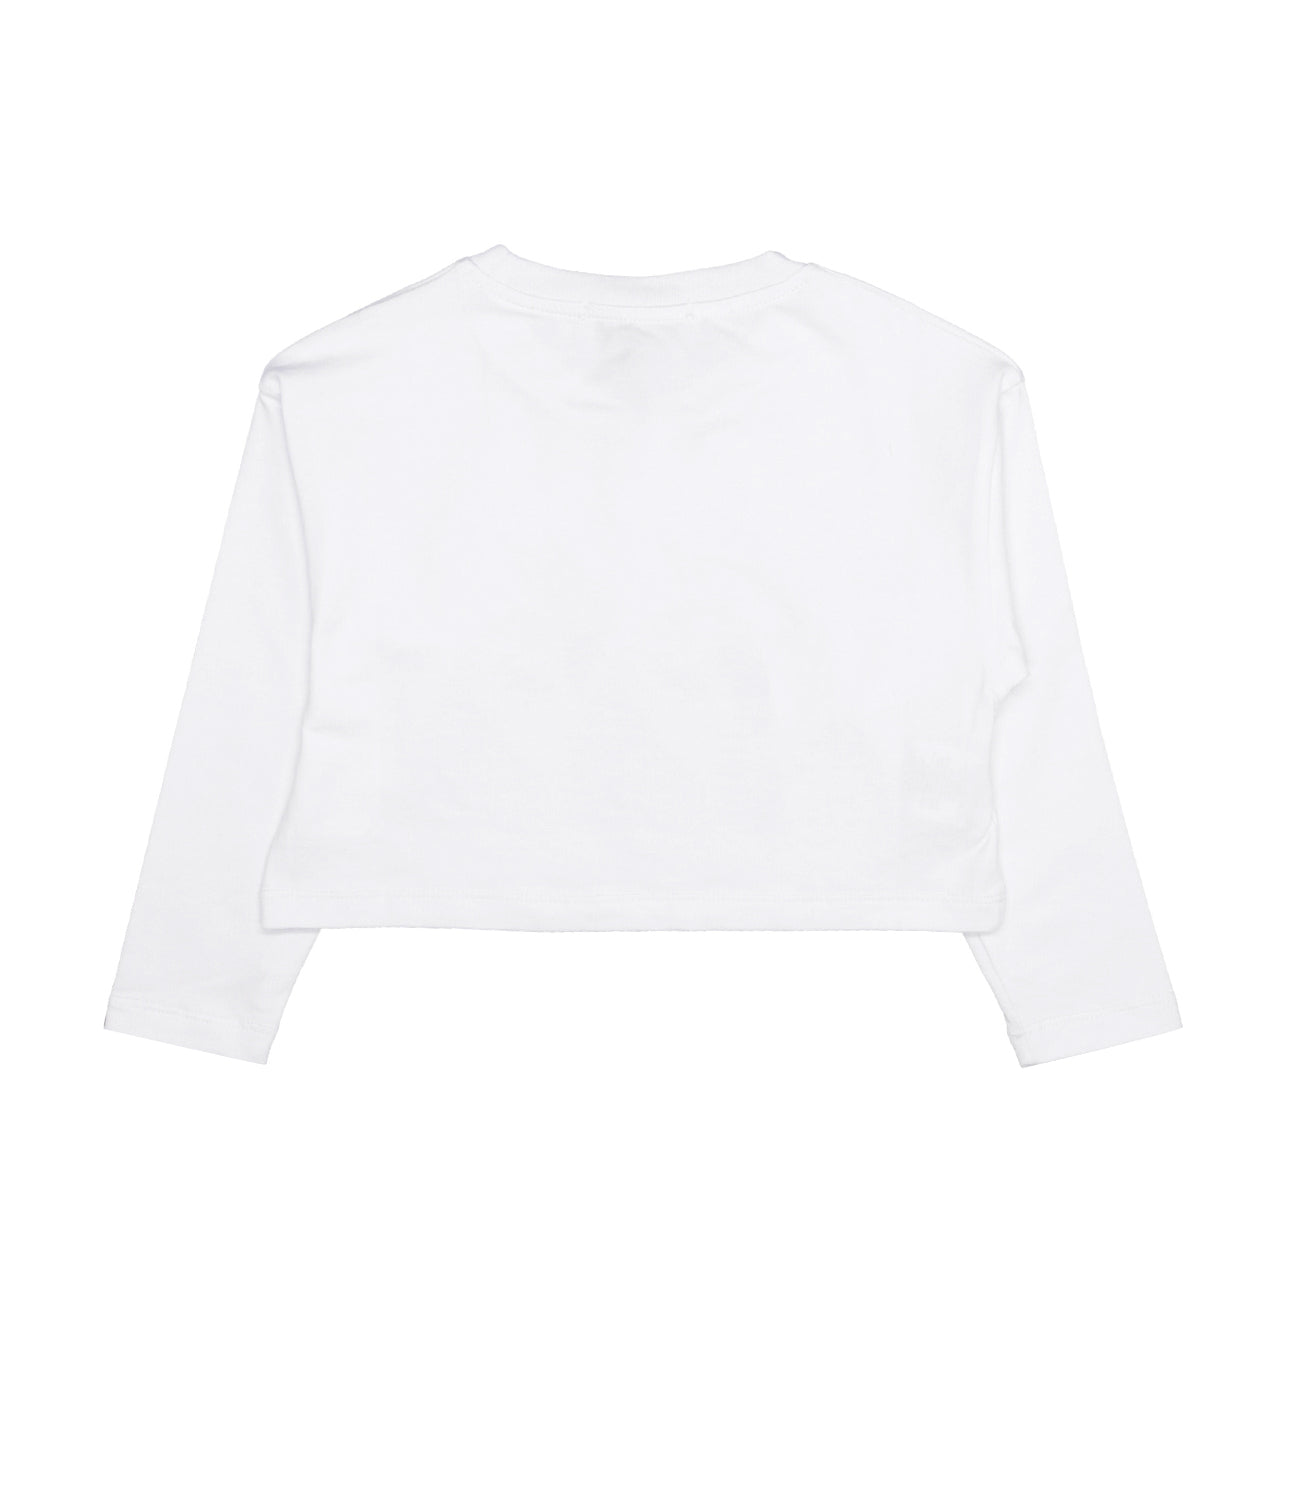 Gaelle Paris Kids | White T-Shirt